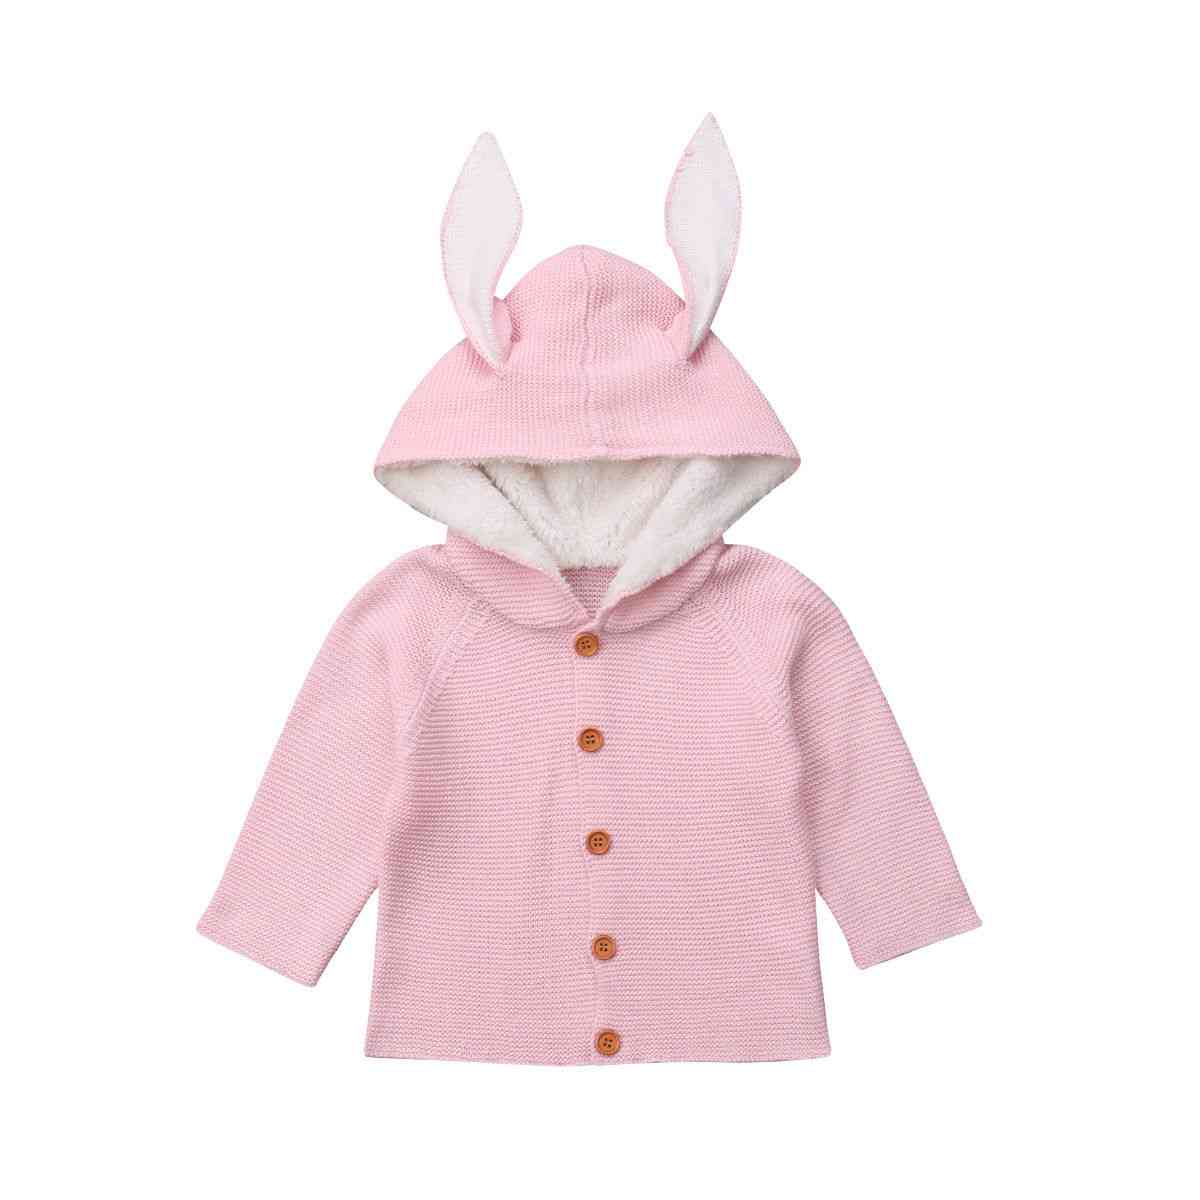 Vêtements pour bébés manteaux chauds nouveau-né bambin enfants filles garçon pull tricoté - rose / 12m